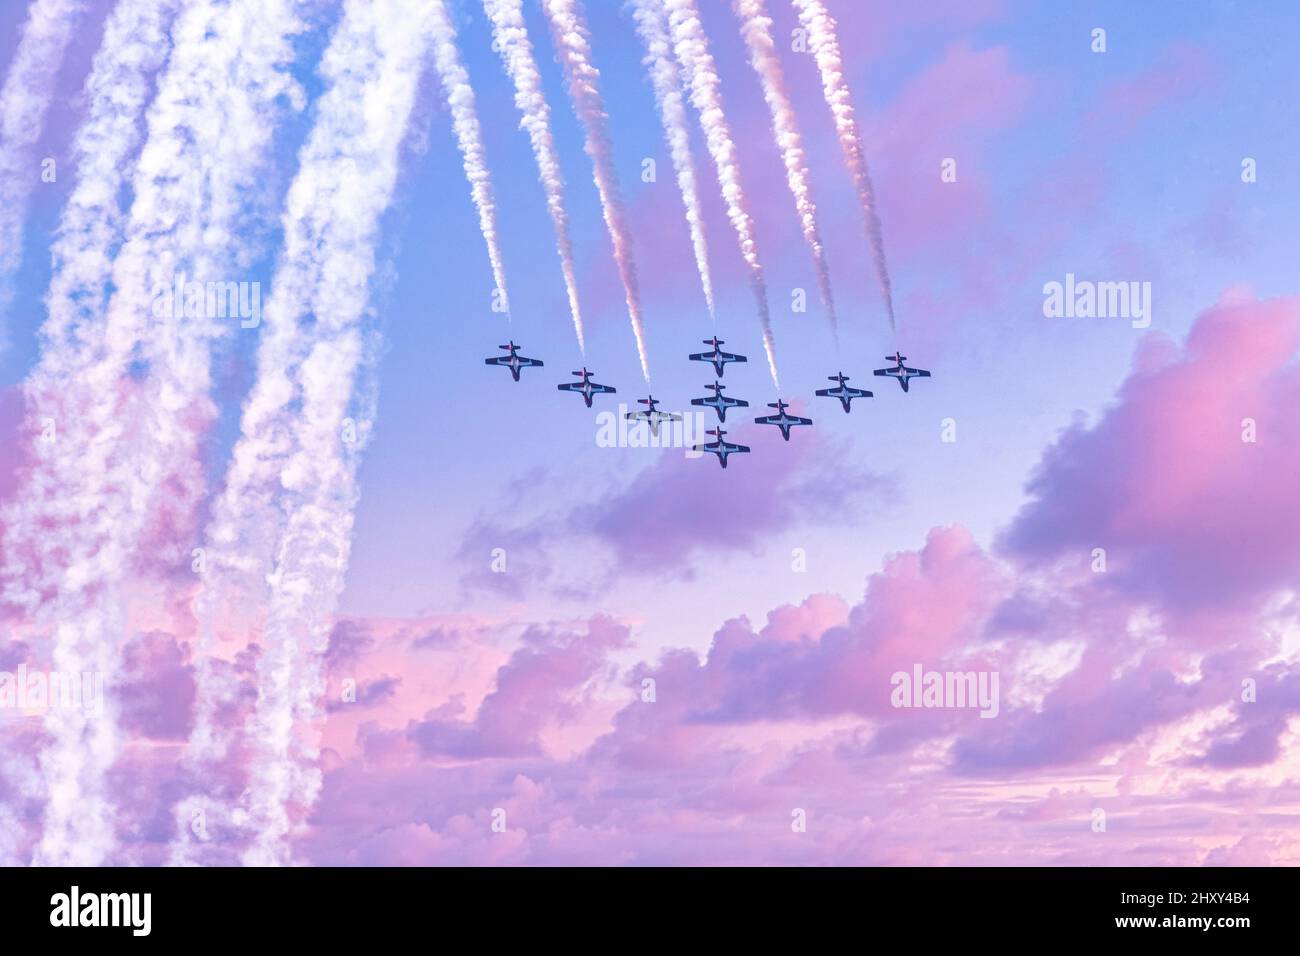 Snowbirds des Forces canadiennes pendant le salon de l'aviation international de Toronto, 2021 Banque D'Images